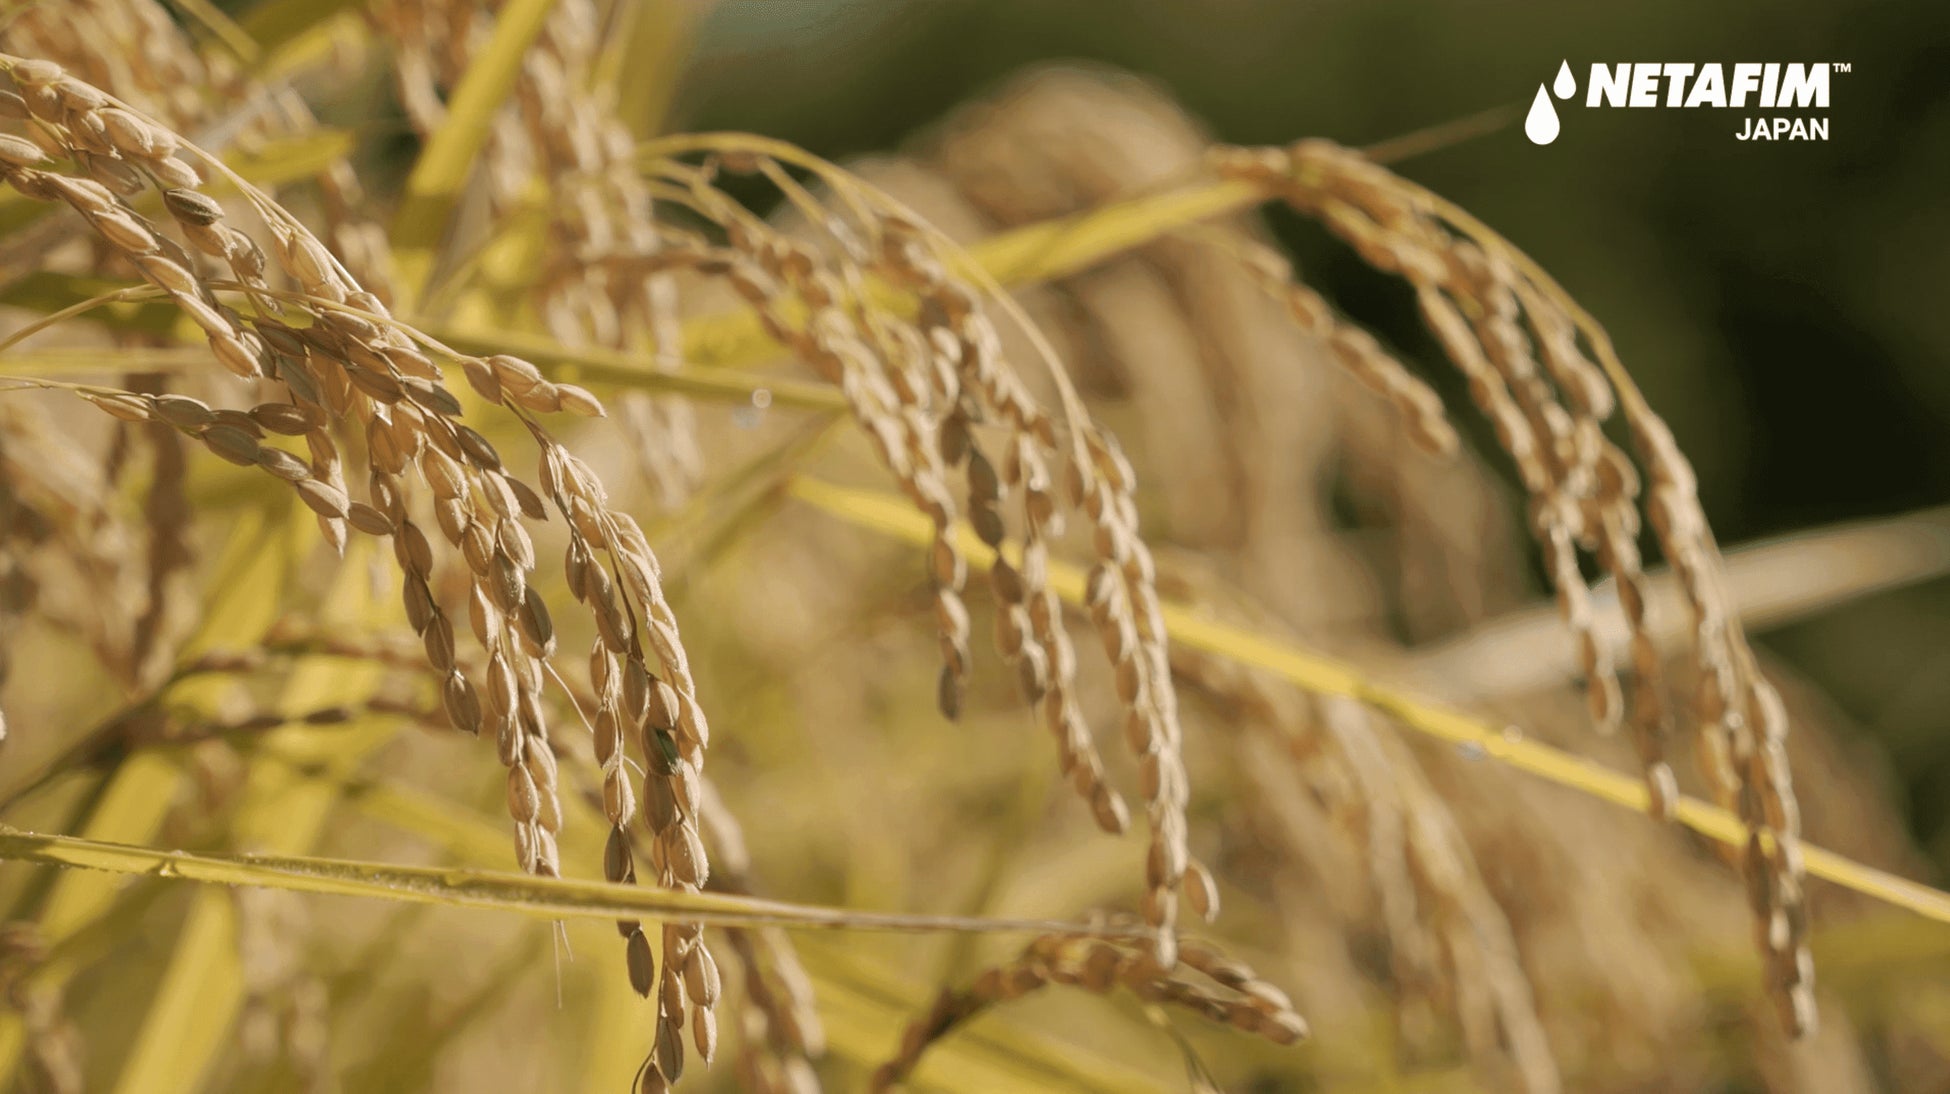 イスラエル発アグリテック企業「ネタフィム」が、点滴灌水で栽培した米を収穫／実証実験を終え、環境負荷・生産過程の課題解決に意欲のサブ画像1